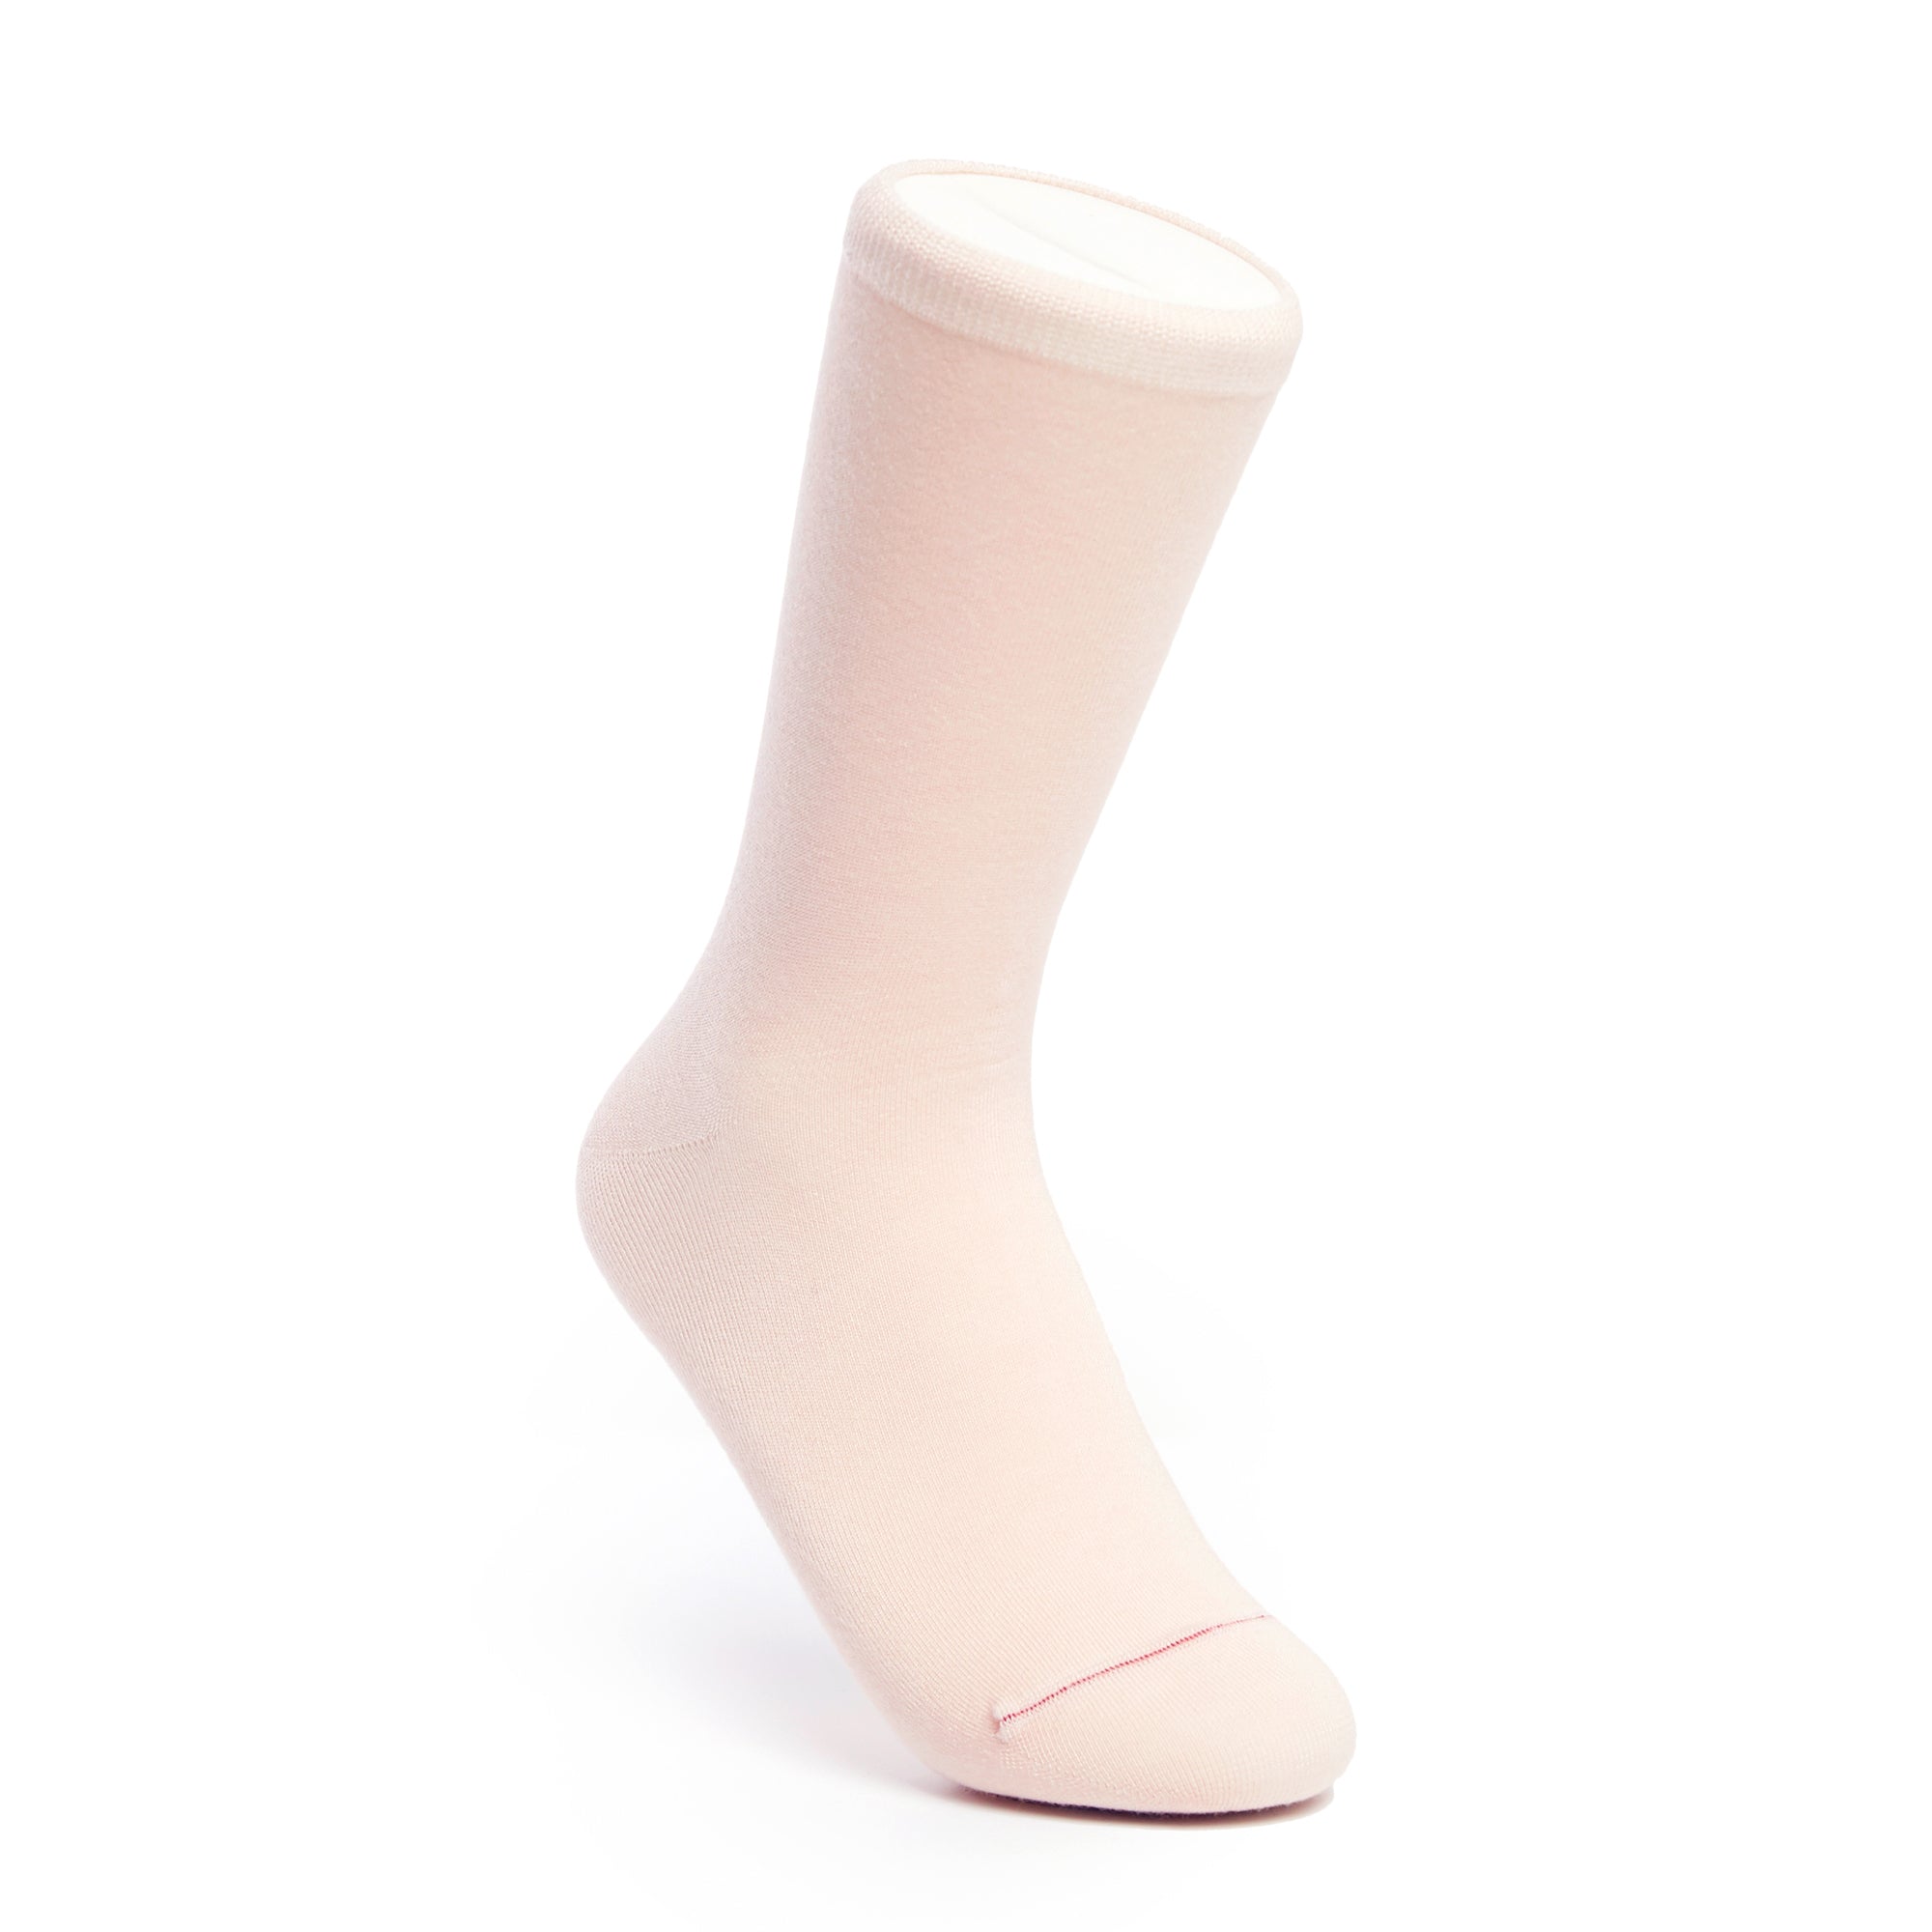 Solid Love Heart - Light Pink - Votta Socks